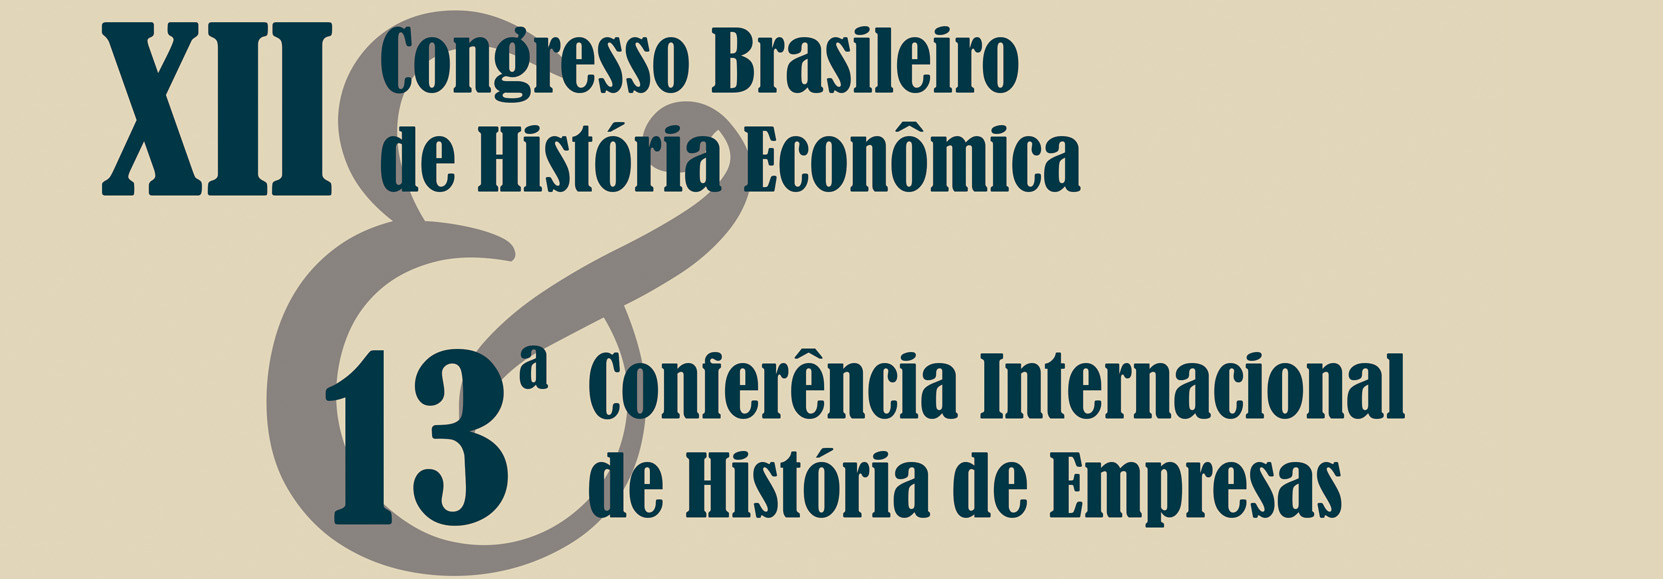 XII Congresso Brasileiro de História Econômica e 13ª Conferência Internacional de História de Empresas